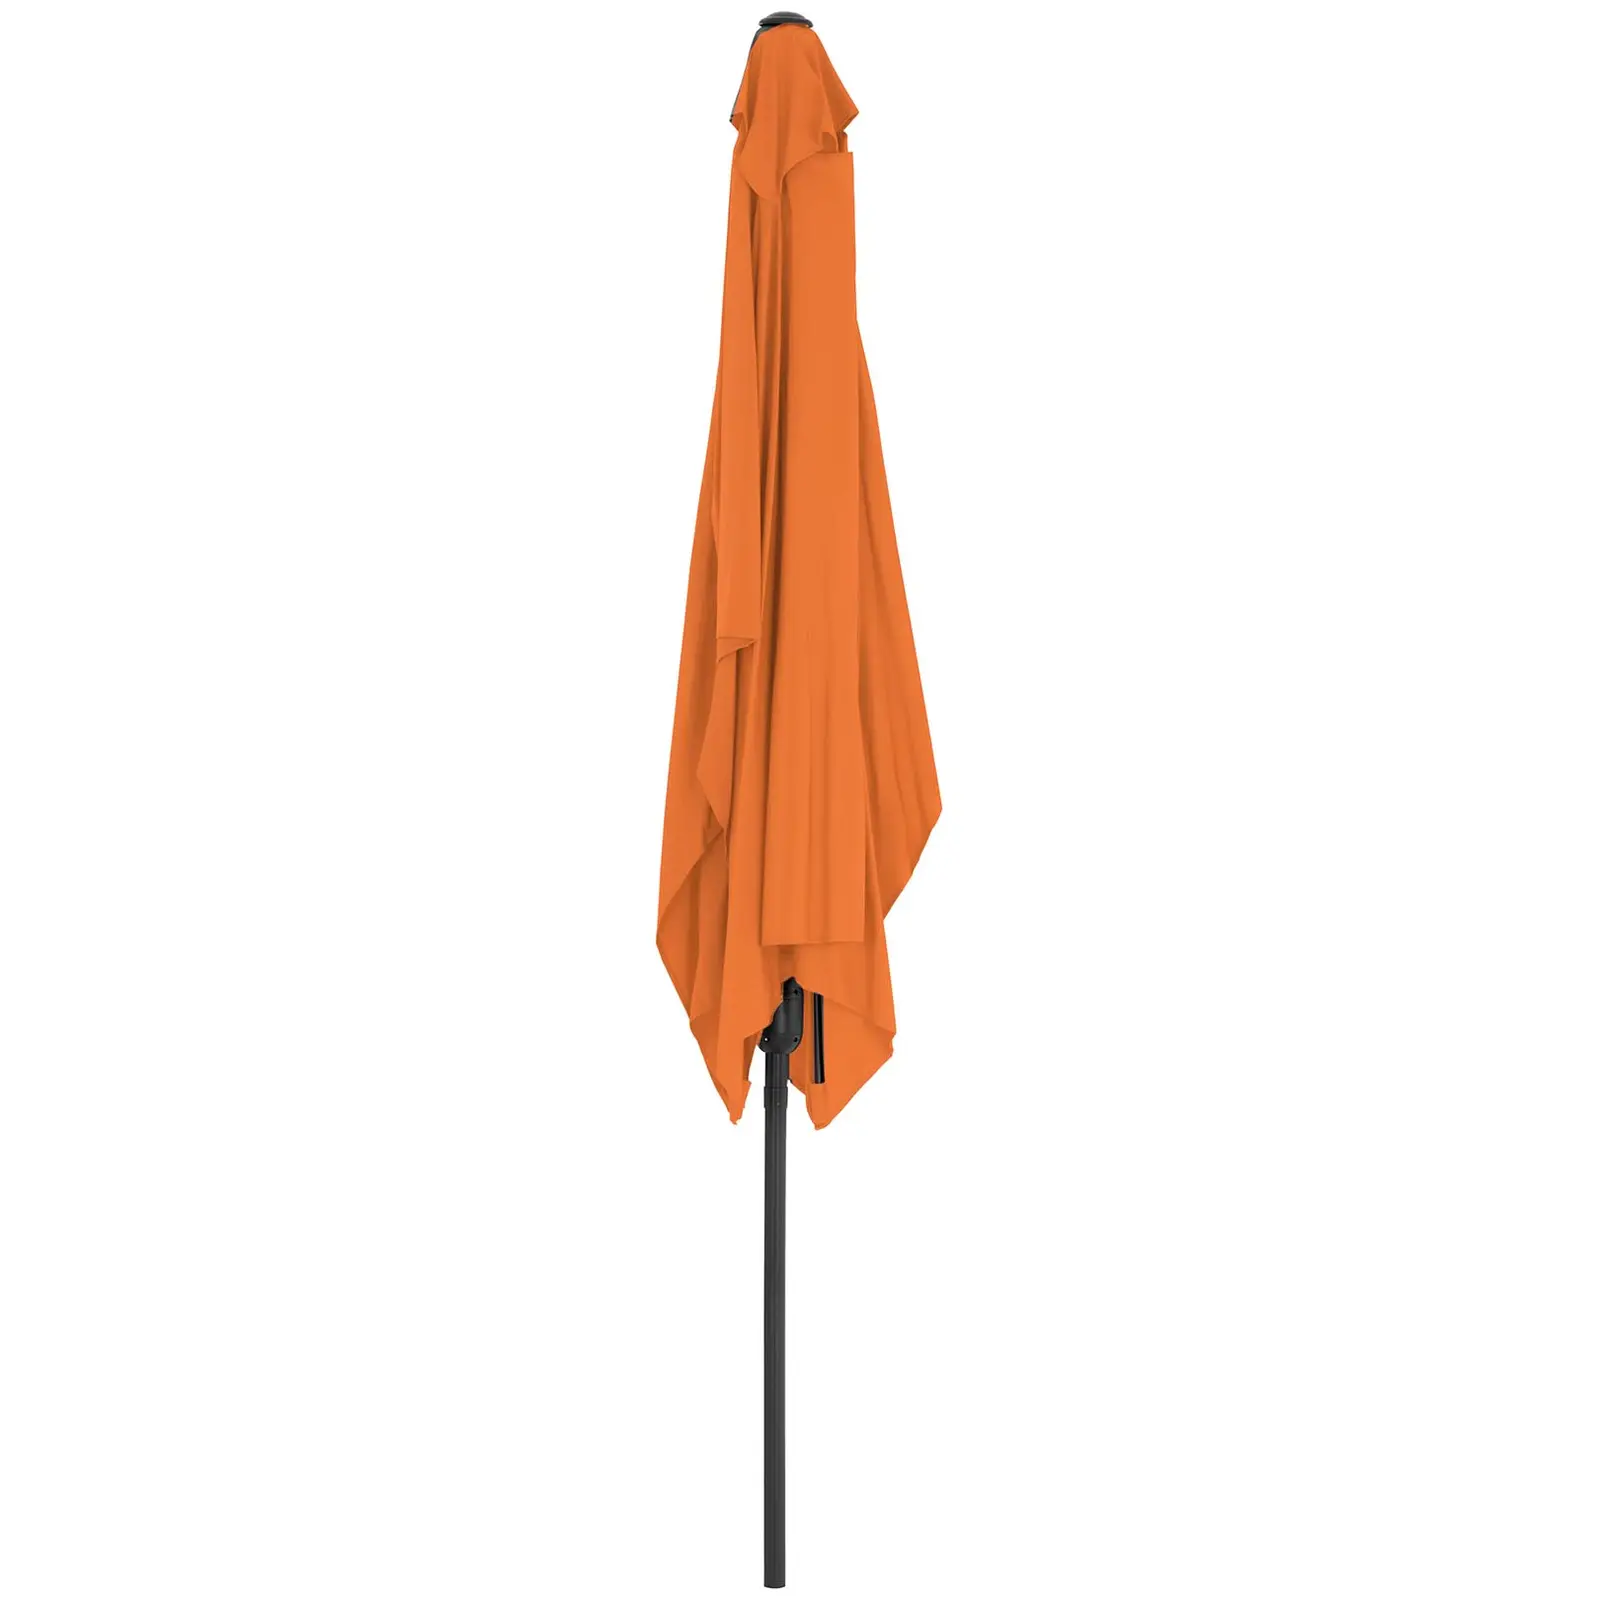 Sonnenschirm groß - orange - rechteckig - 200 x 300 cm - neigbar